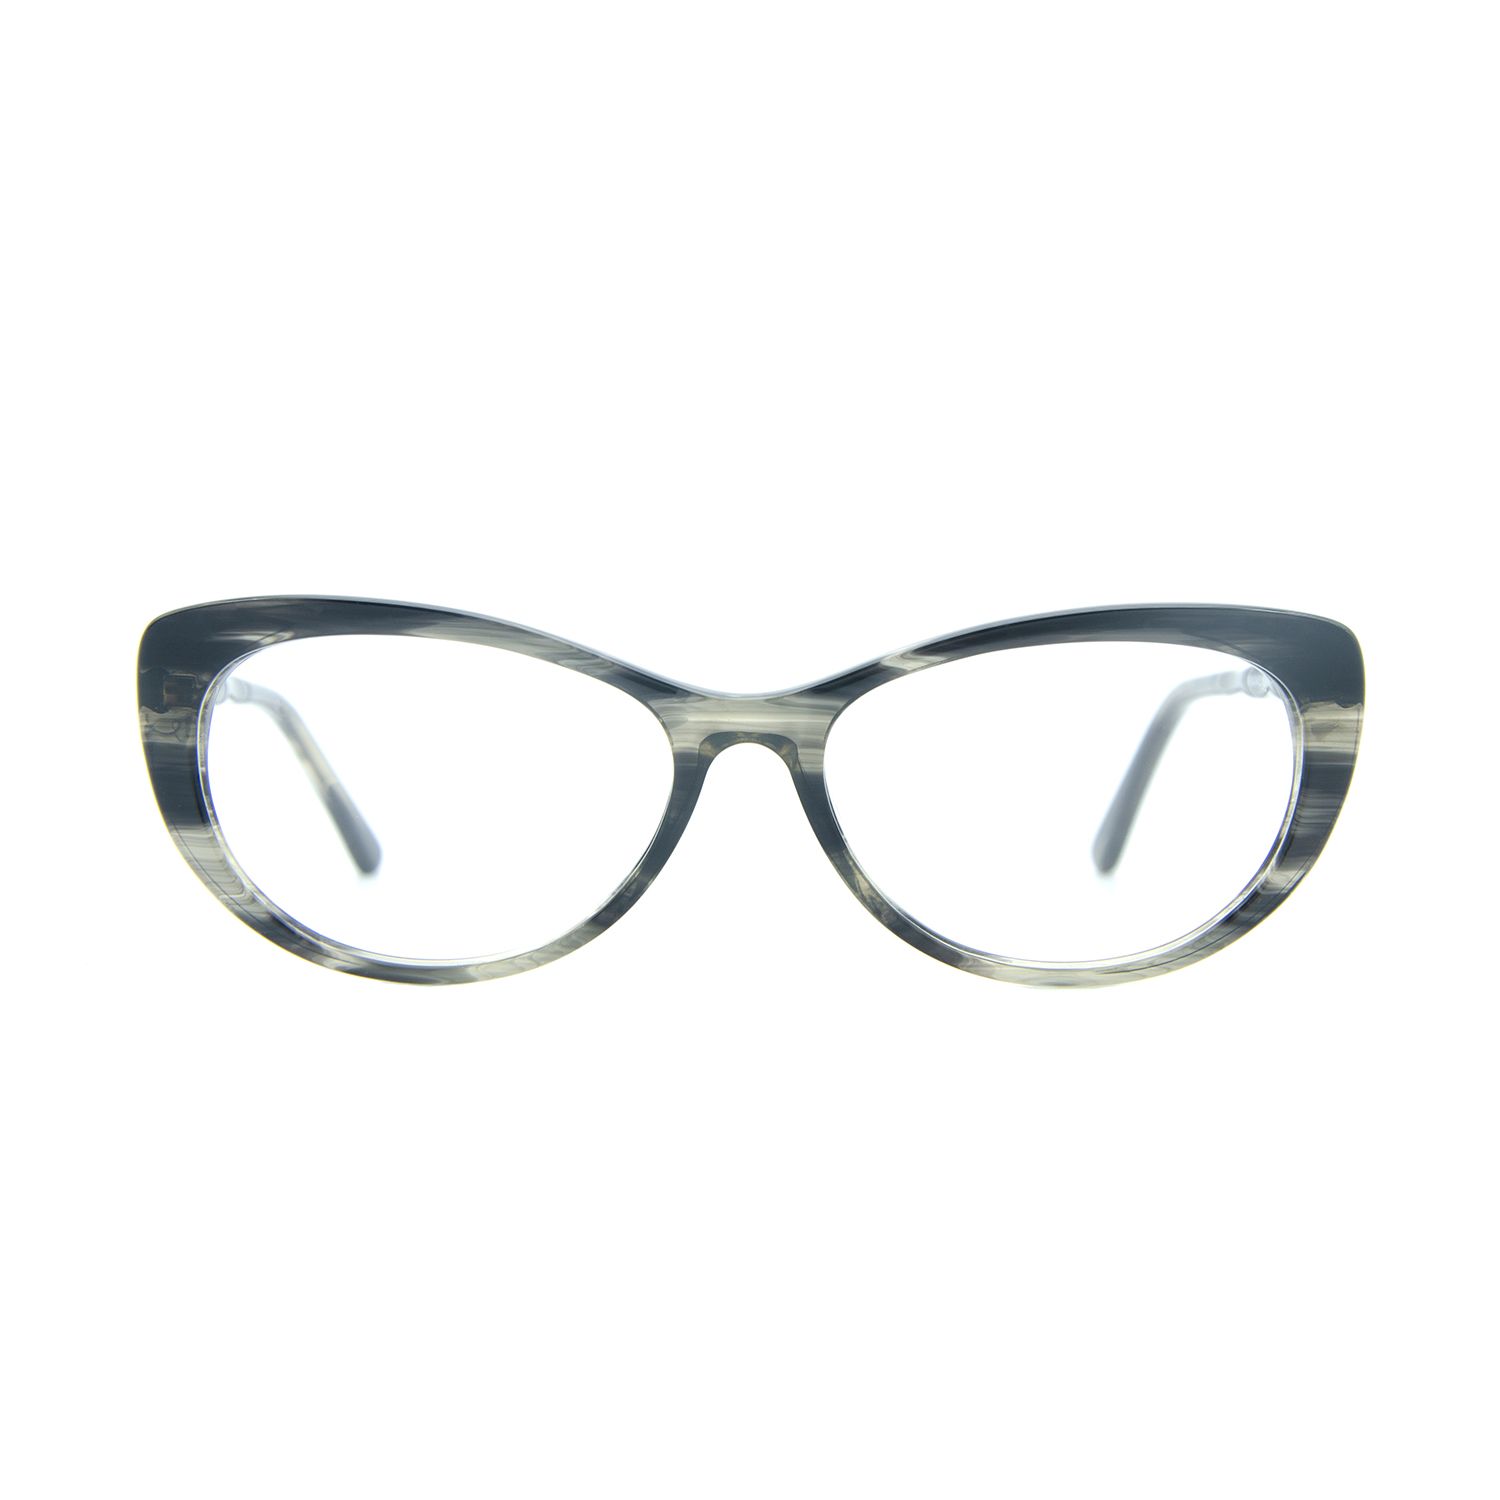 فریم عینک طبی ام اند او مدل Noah-c1 -  - 1